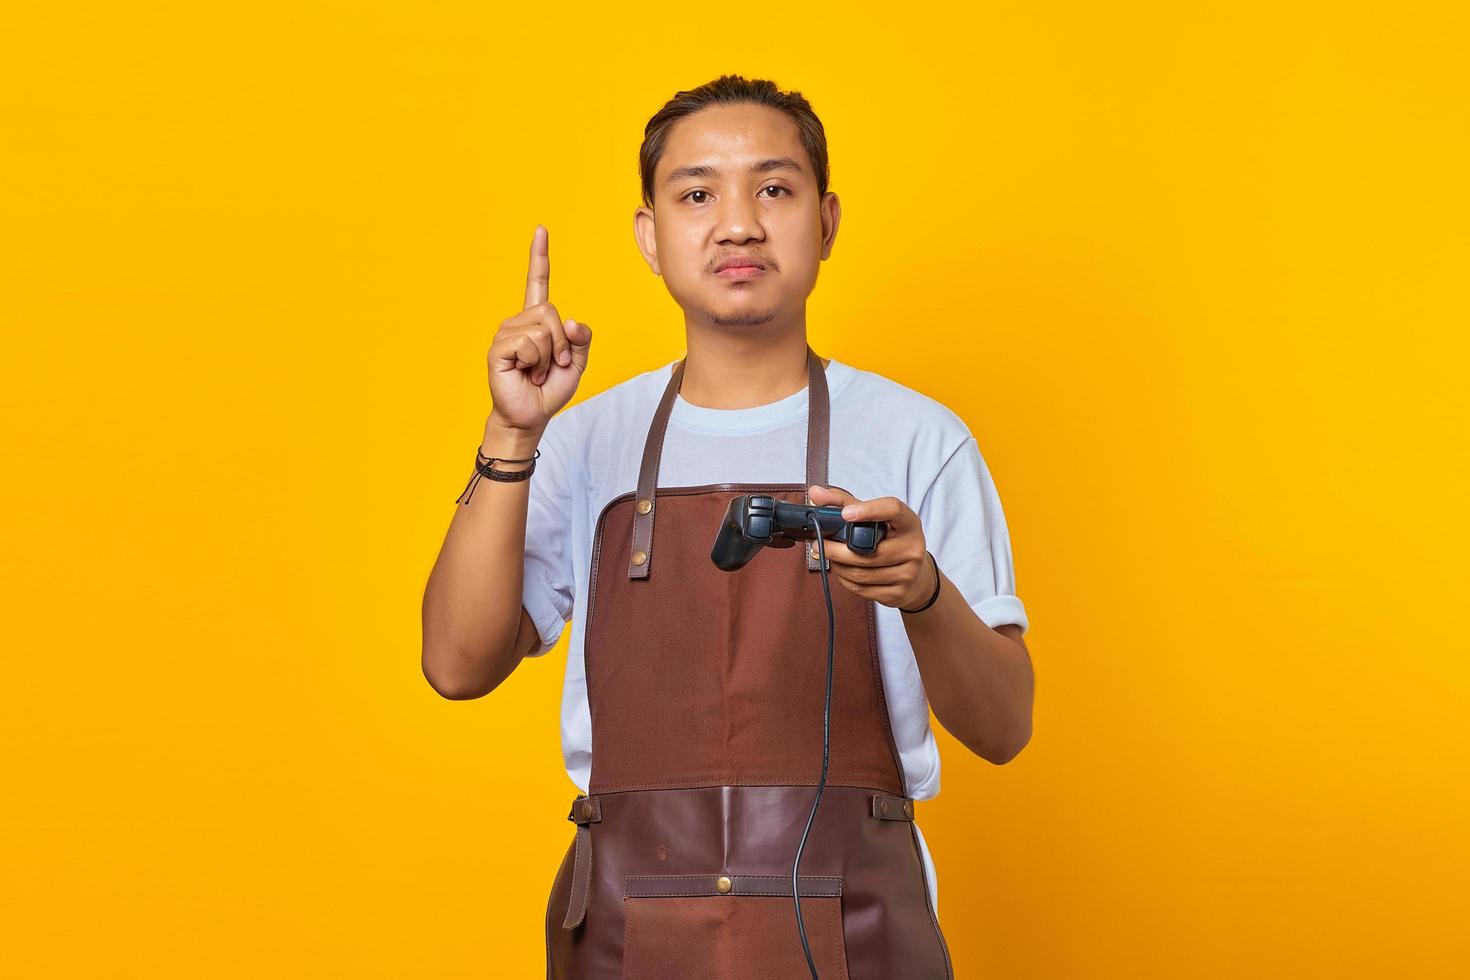 portret van een knappe aziatische jonge man met een schort met een gamecontroller die een geweldig idee heeft dat op een gele achtergrond wordt geïsoleerd foto